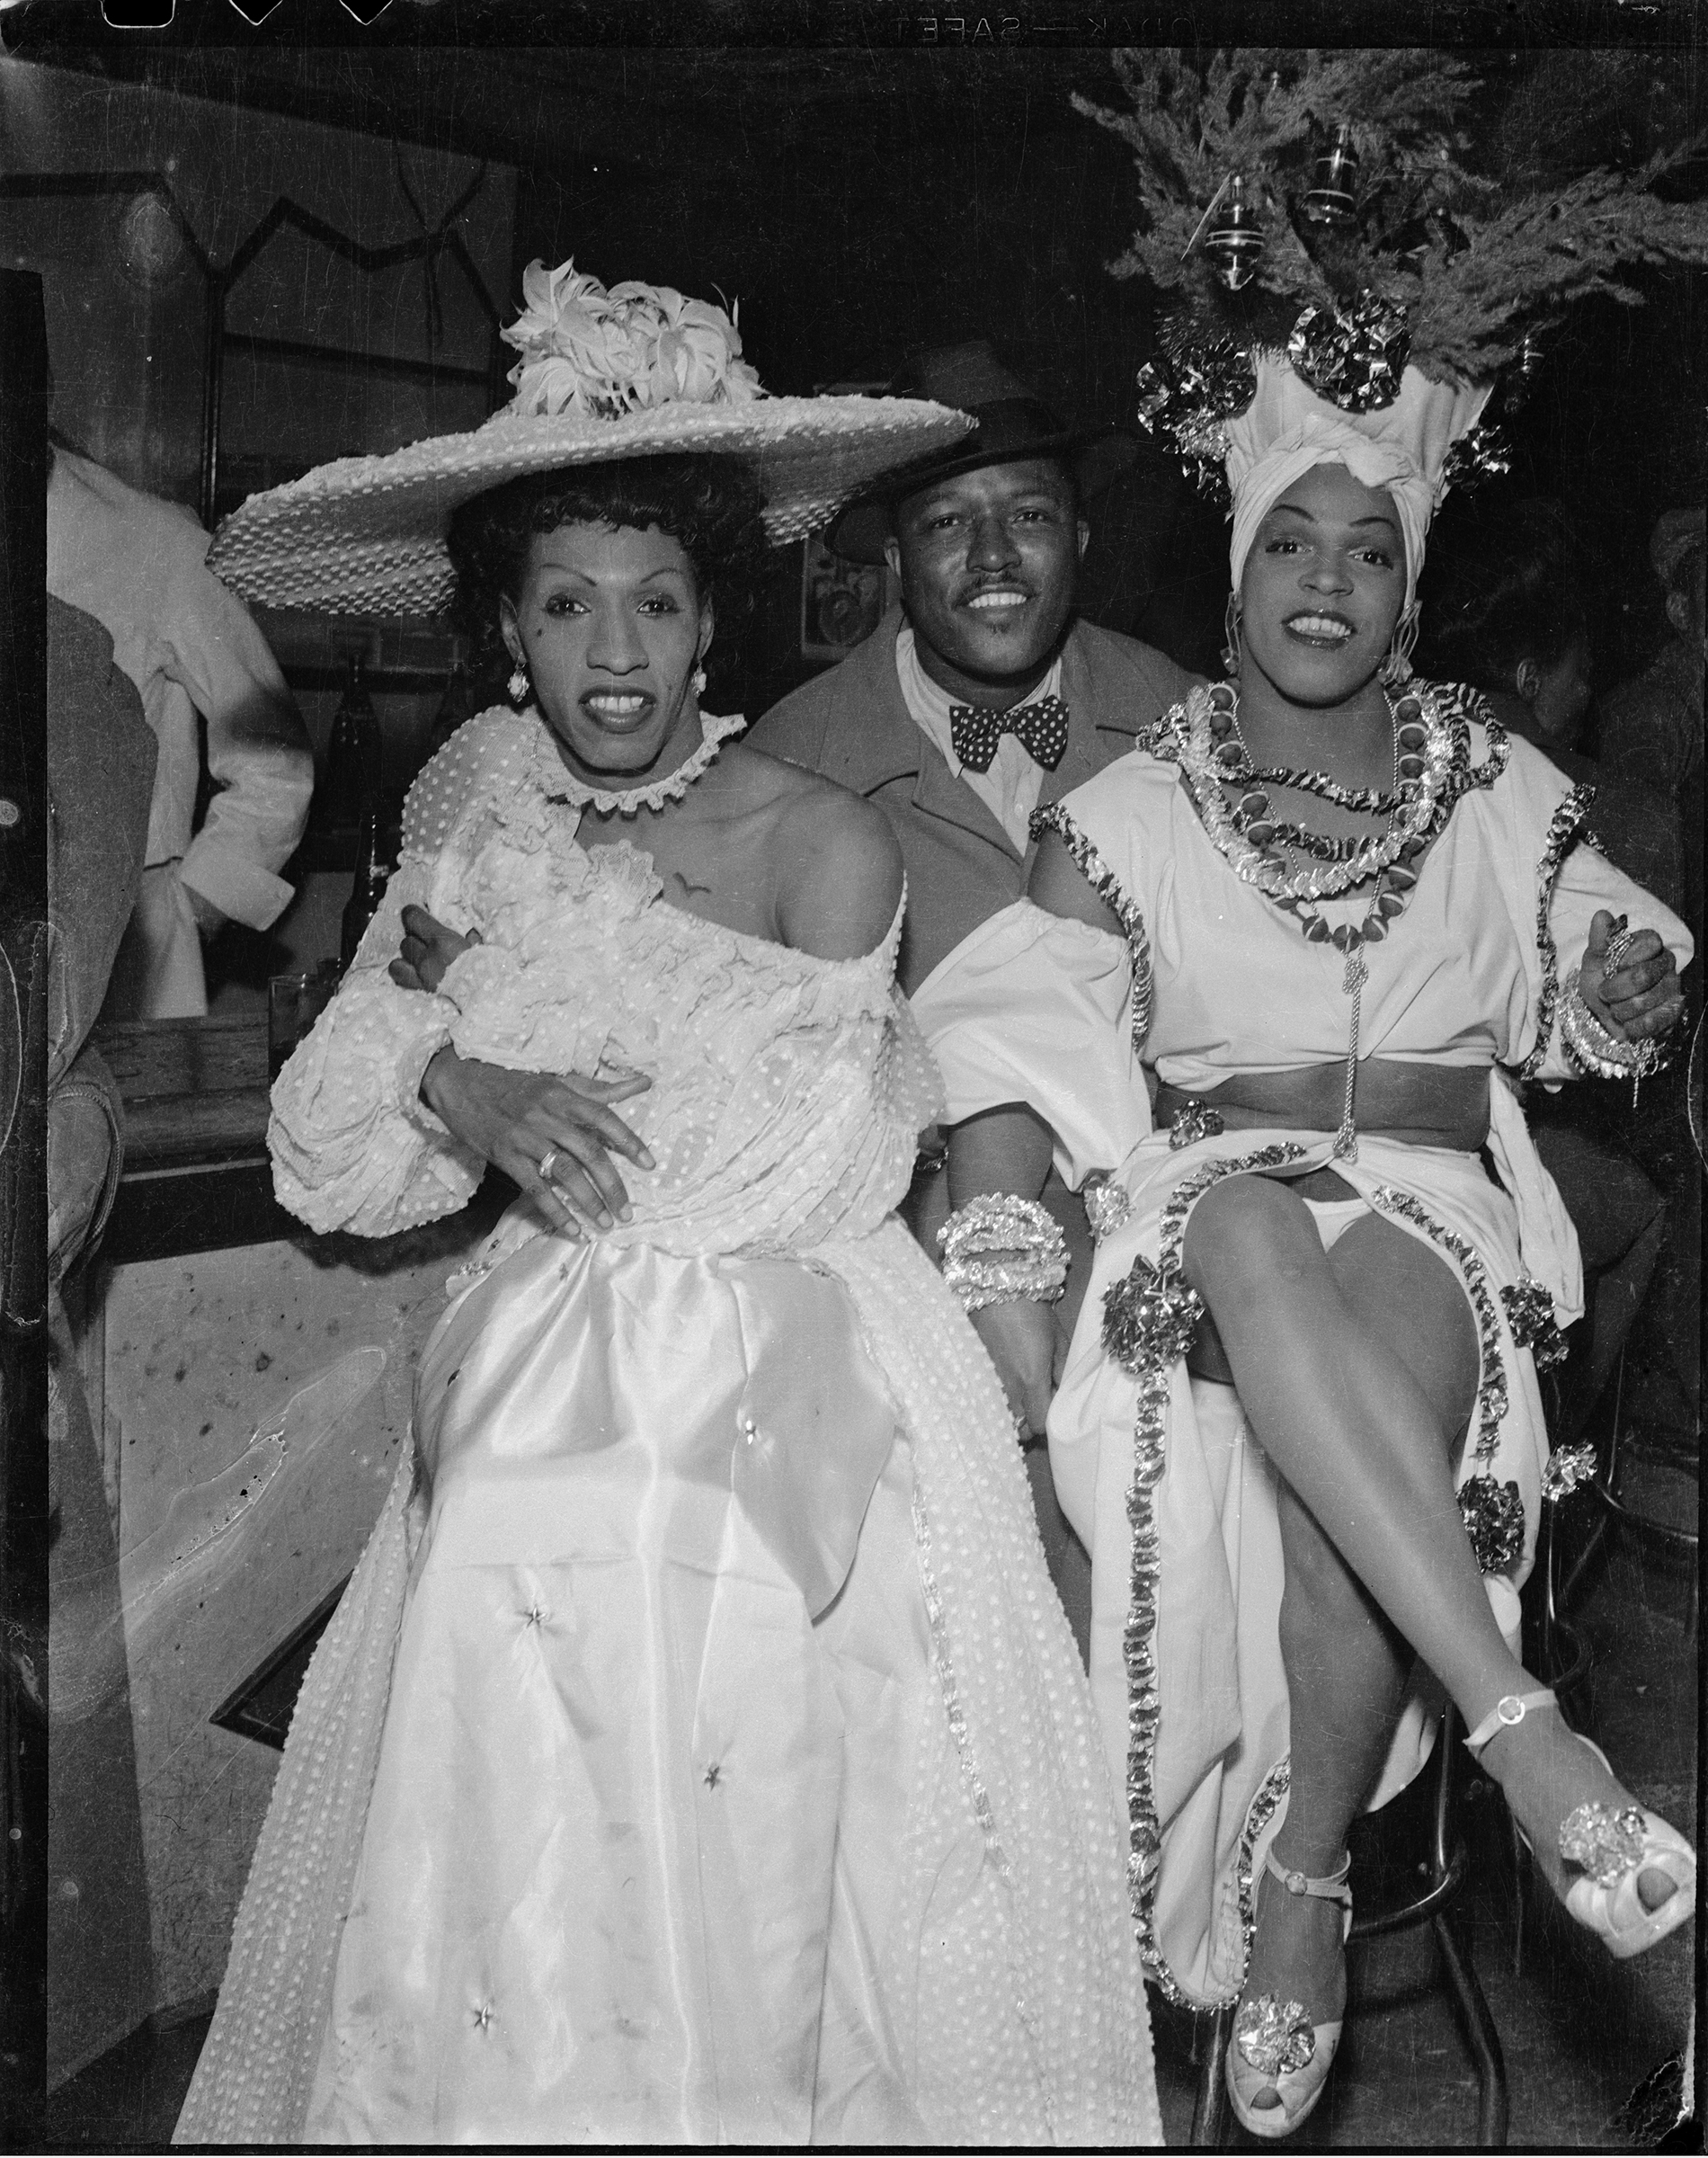     Charles “Teenie” Harris, Man seated between drag performers &#8220;Gilda,&#8221; and &#8220;Junie&#8221; Turner wearing Caribbean-style costume, 1945 – 1955.
Silver Gelatin print. Courtesy of Carnegie Museum of Art, Pittsburgh.

